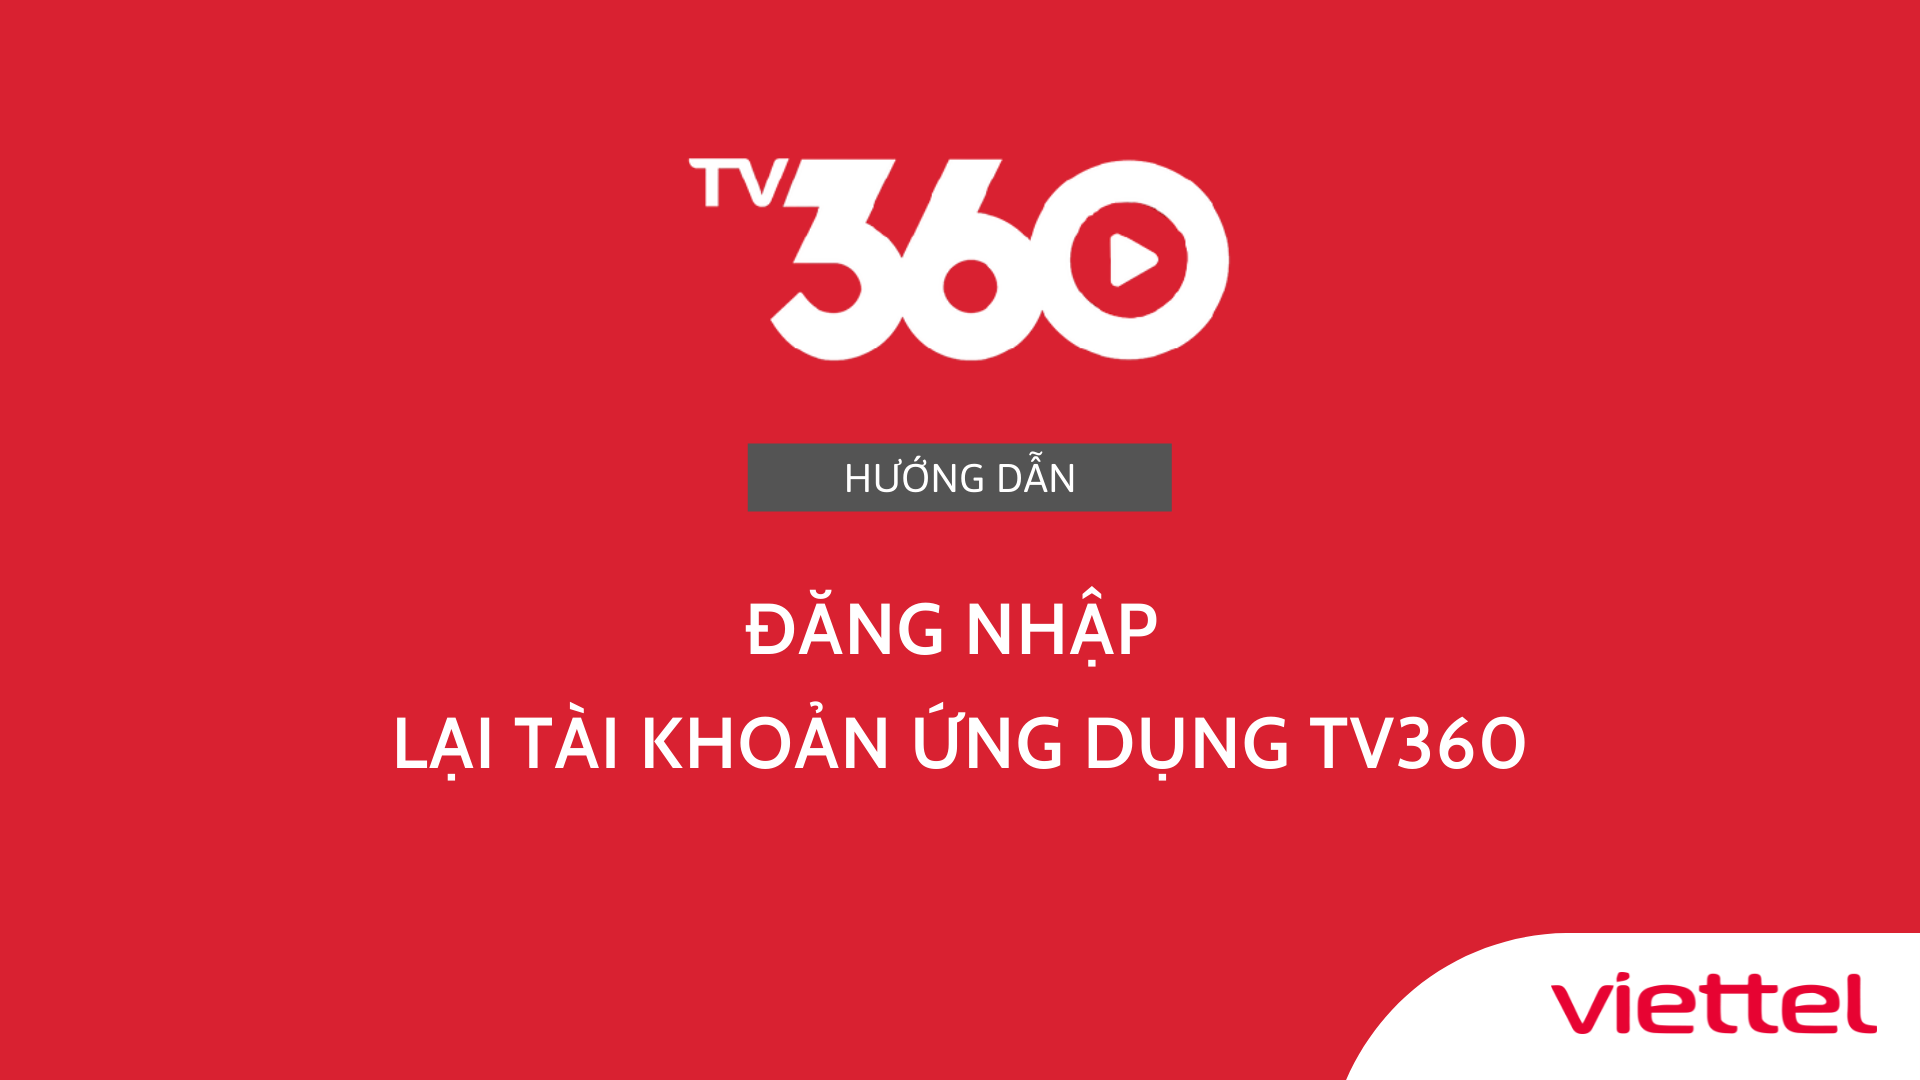 Hướng dẫn đăng nhập lại tài khoản ứng dụng TV360